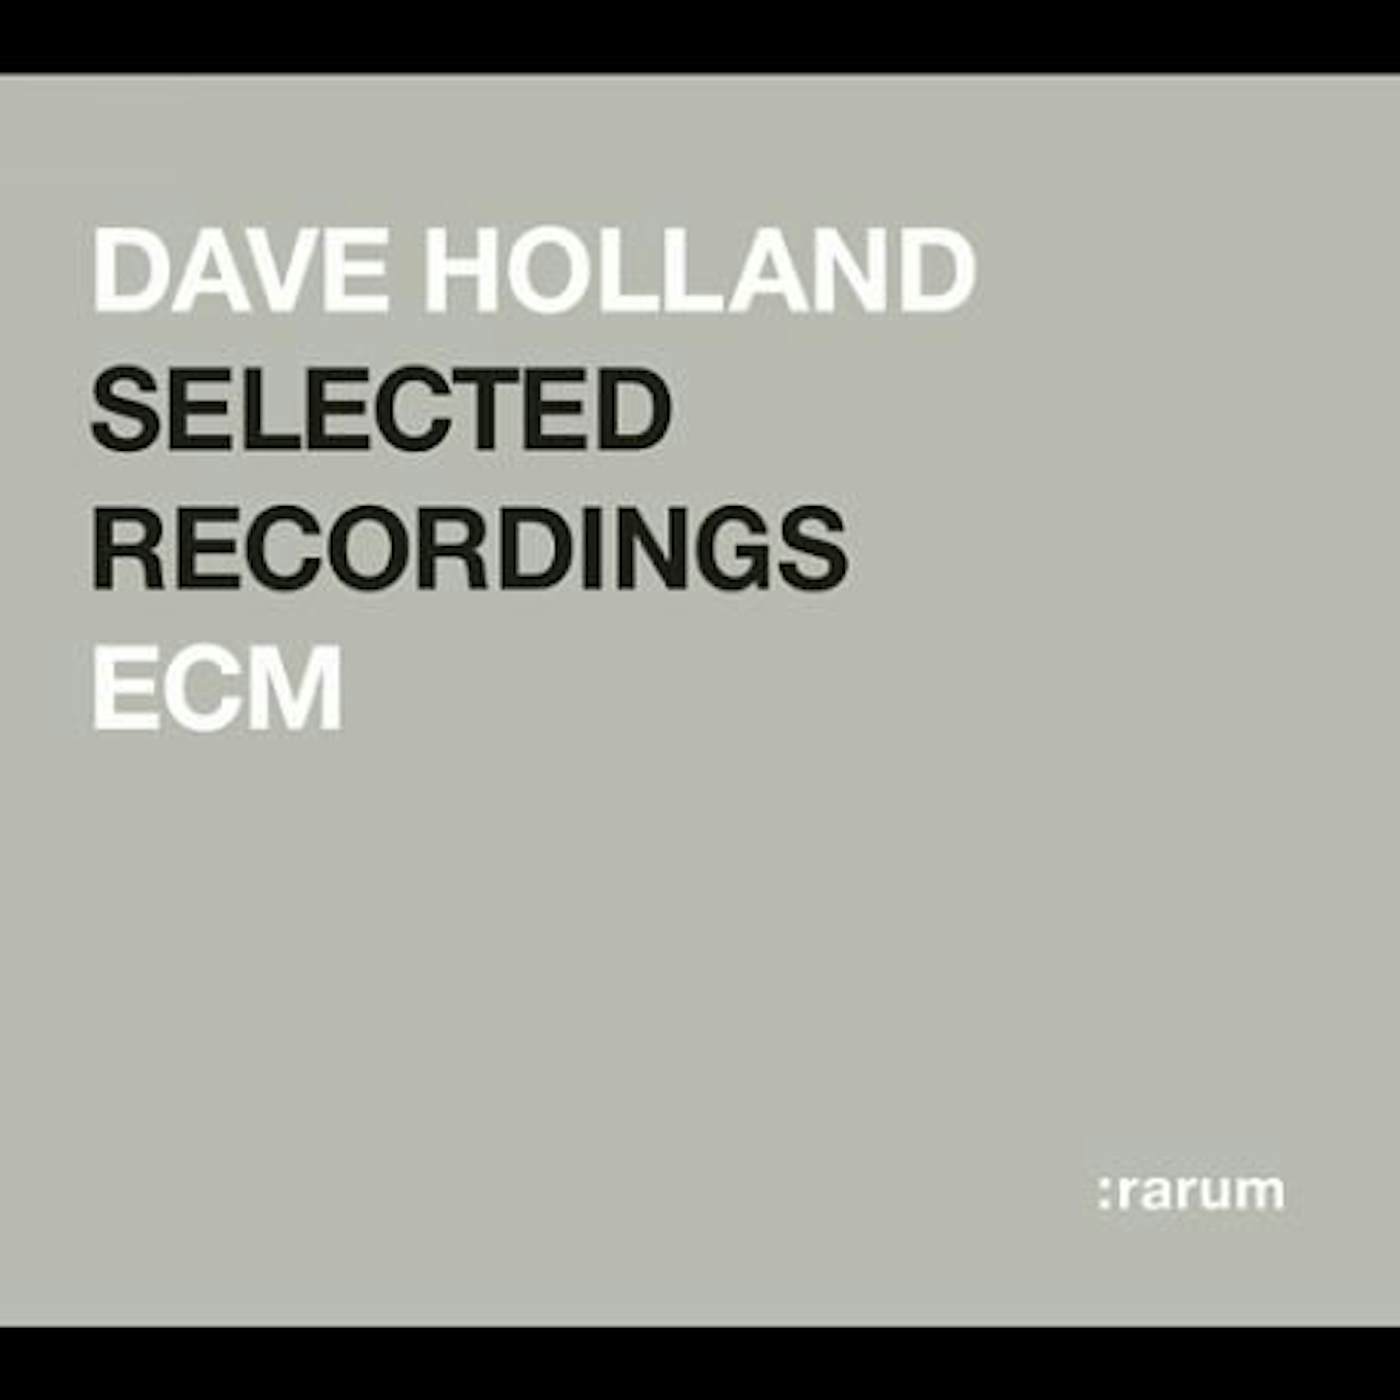 Dave Holland RARUM X CD